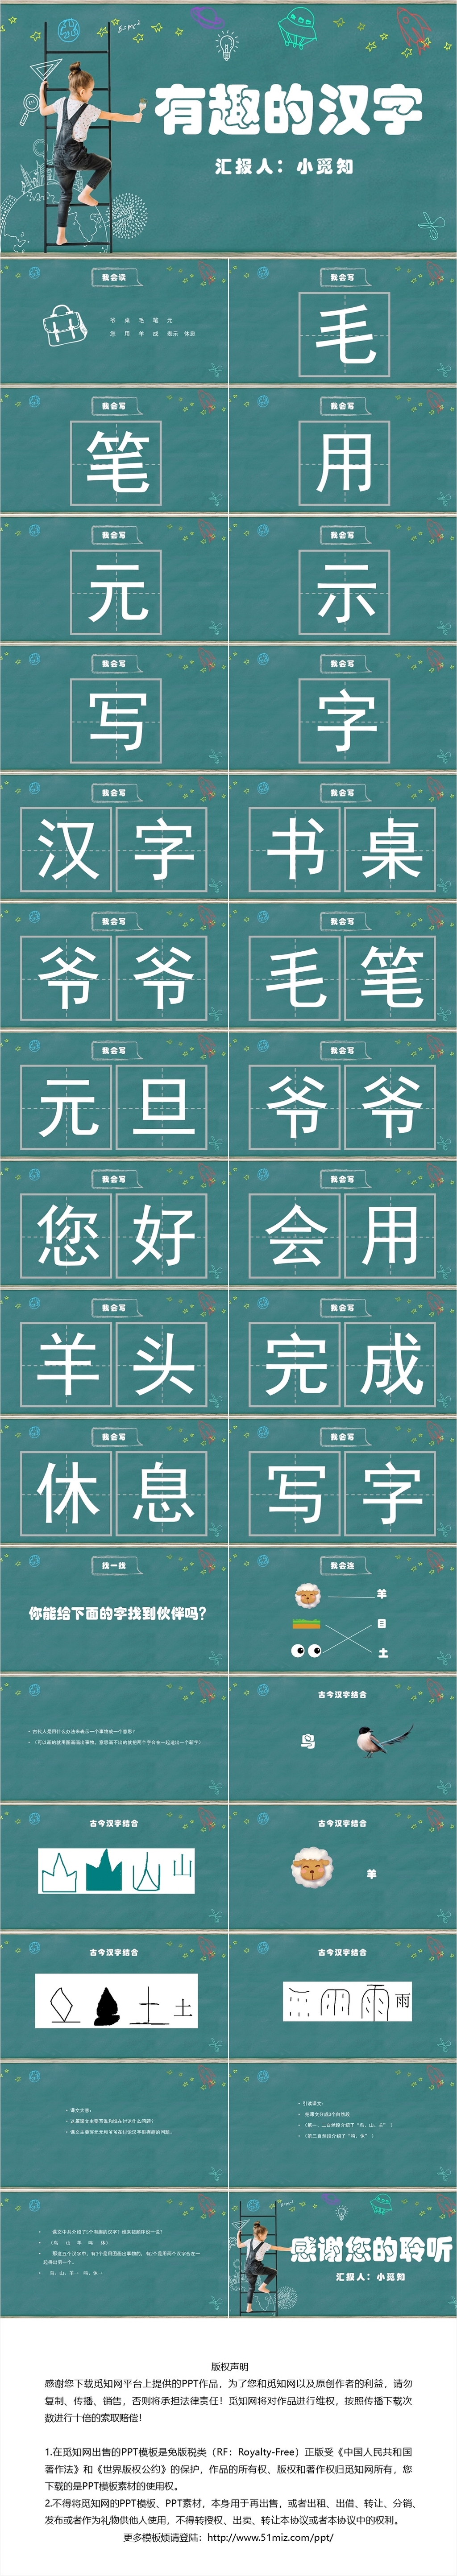 绿色黑板风有趣的汉字教学课件语文教学有趣的汉字PPT模板有趣的汉字ppt